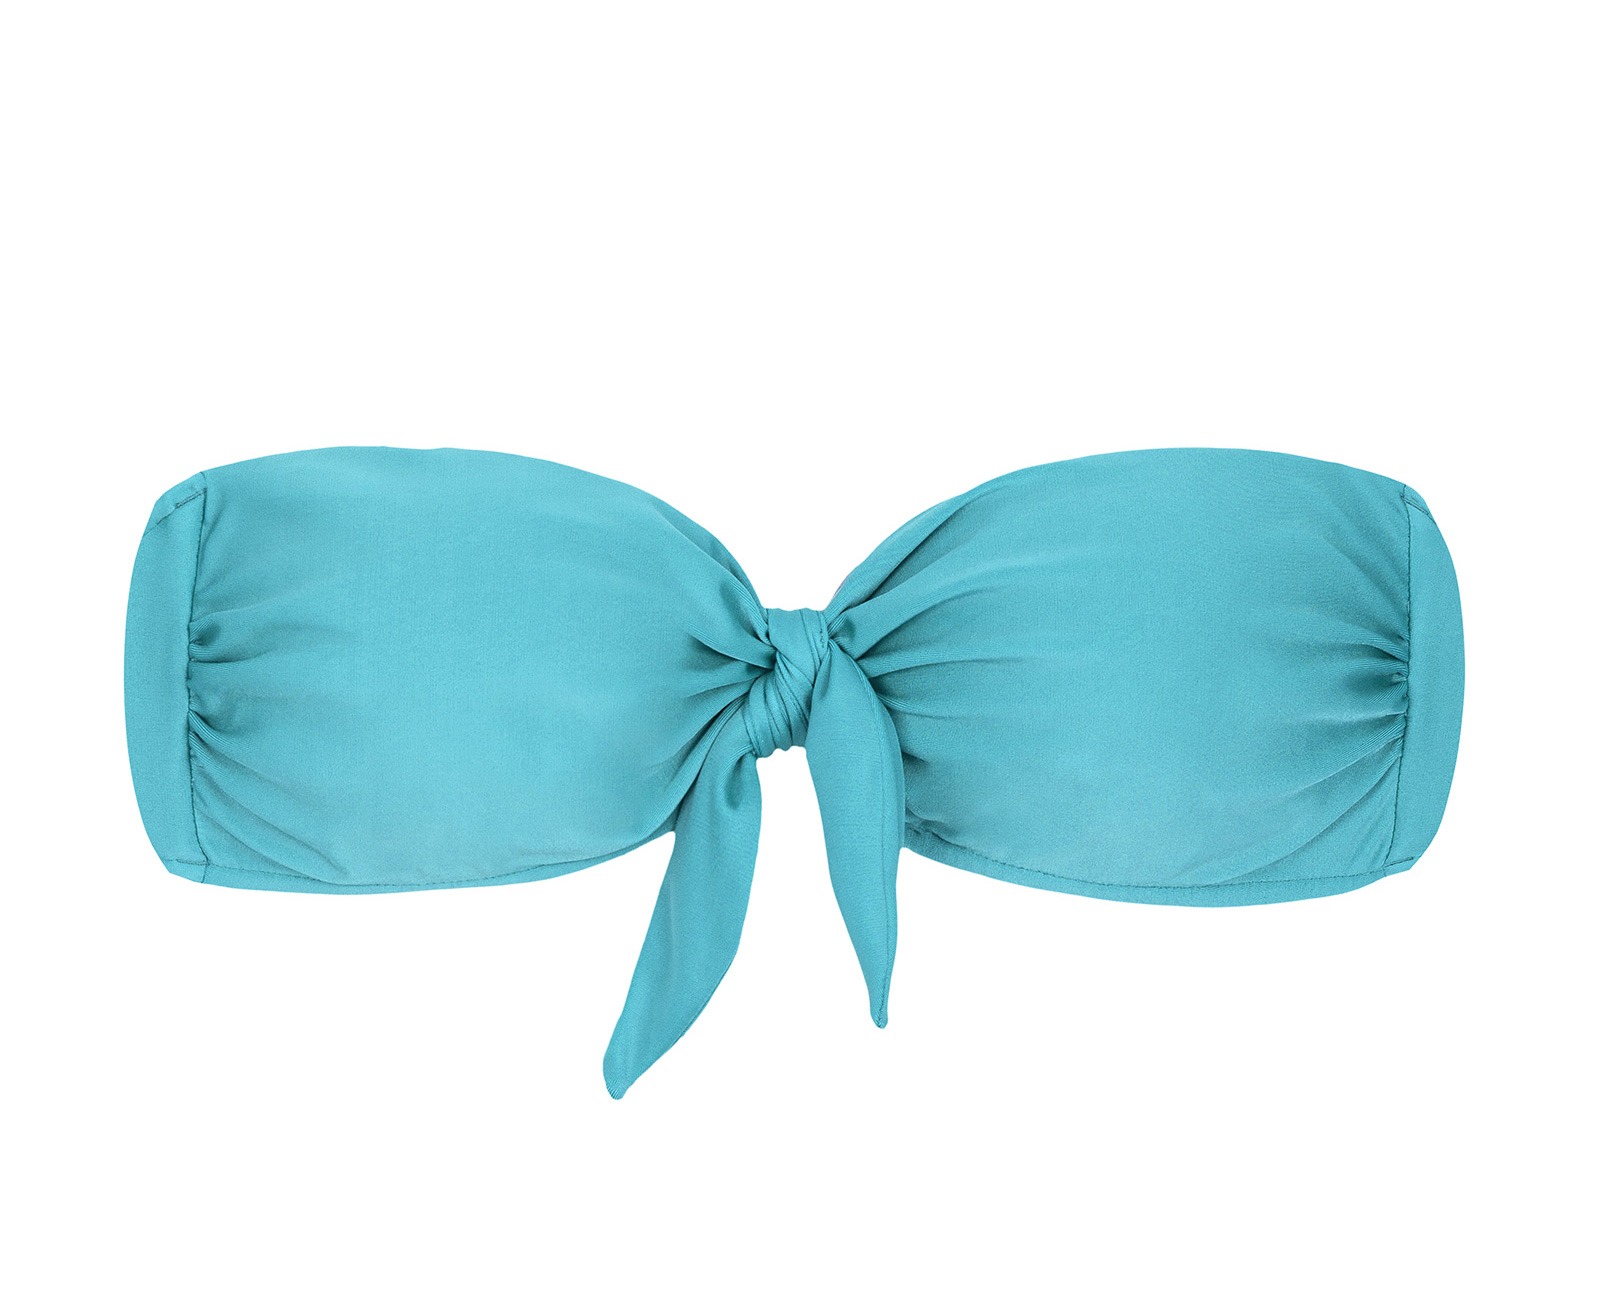 Bikini Tops Sky Blue Bandeau Top With A Knot - Top Orvalho Bandeau